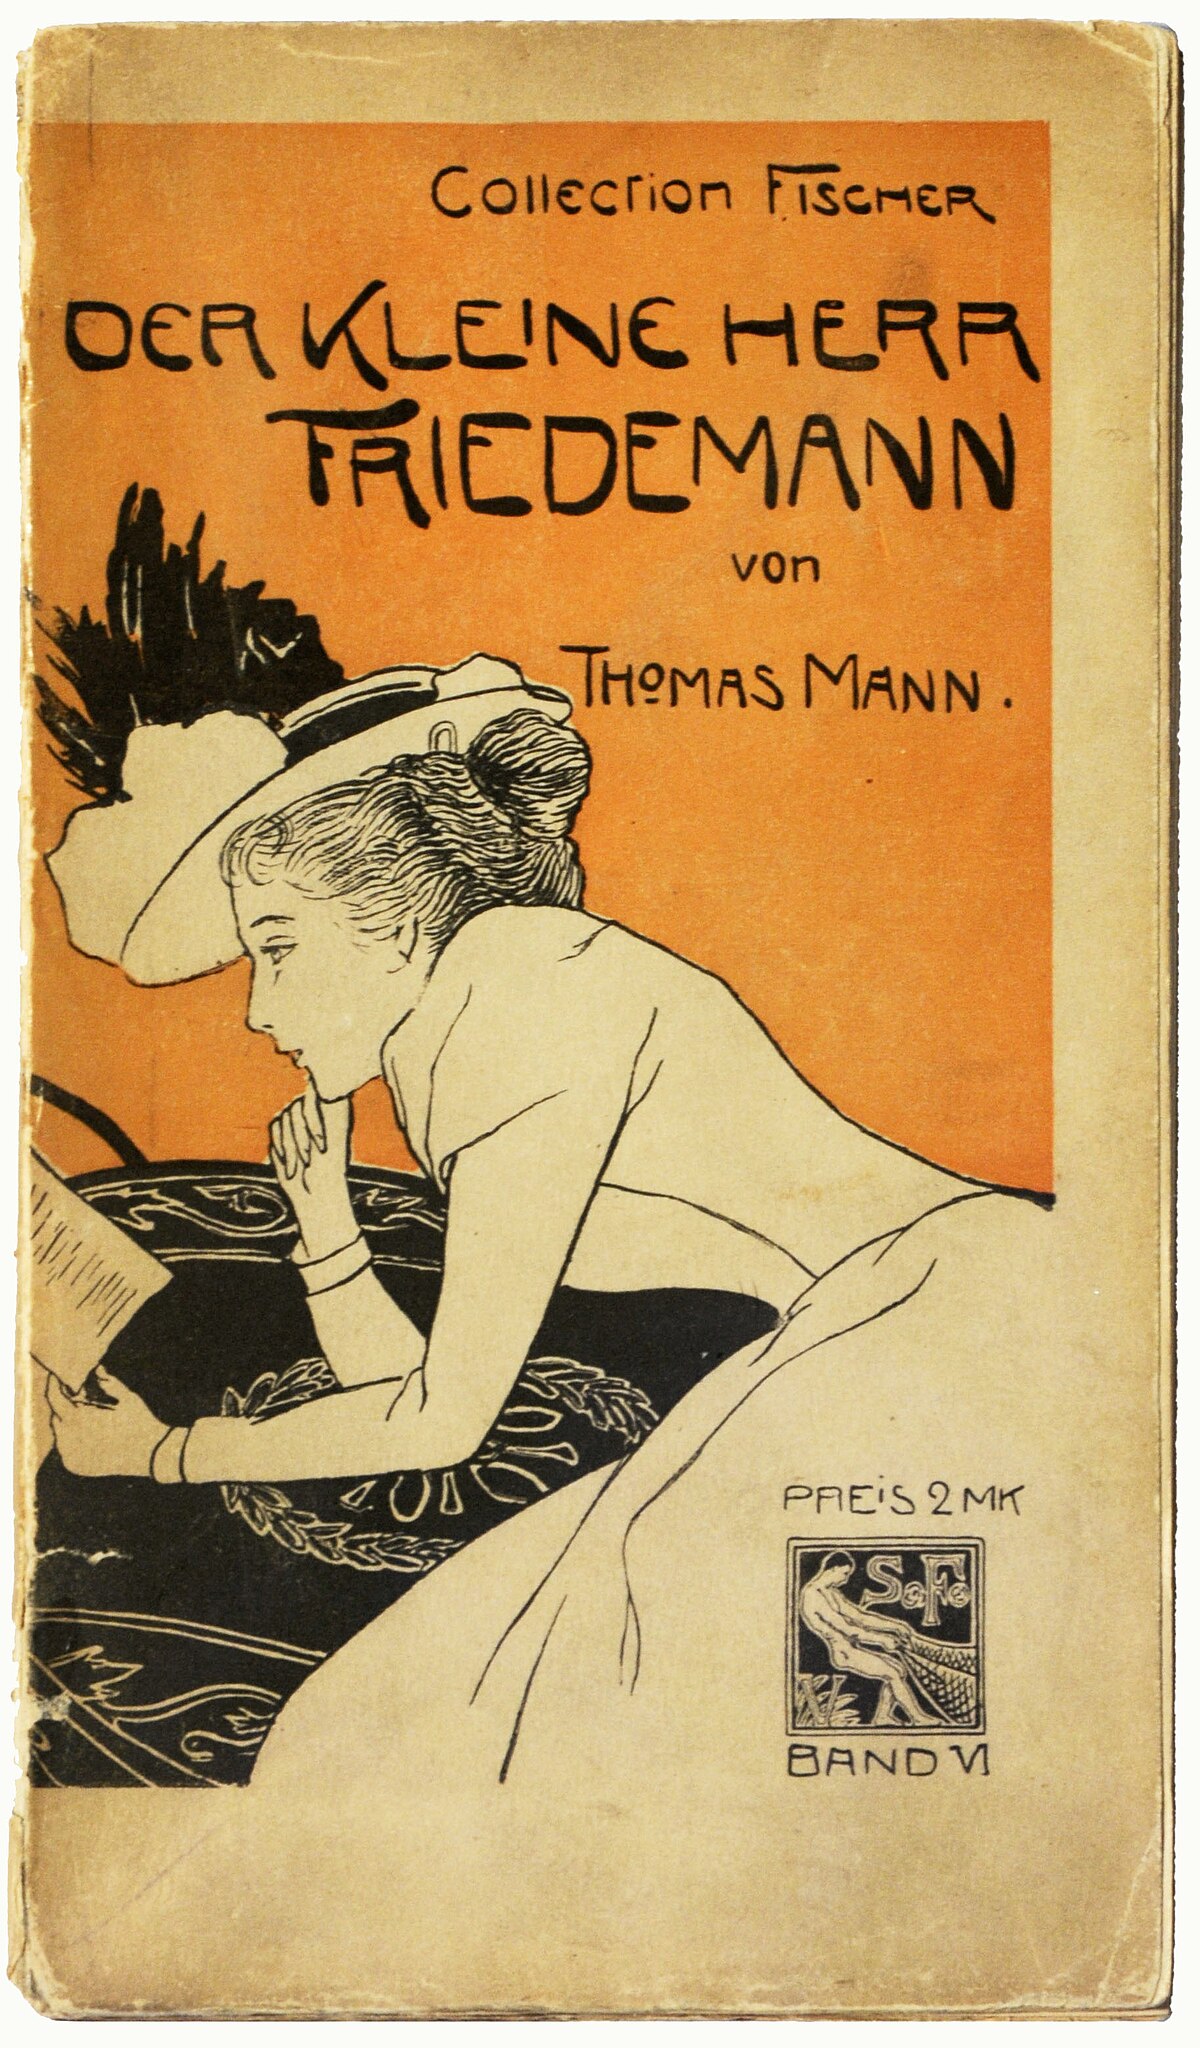 Thomas Mann – Wikipedia